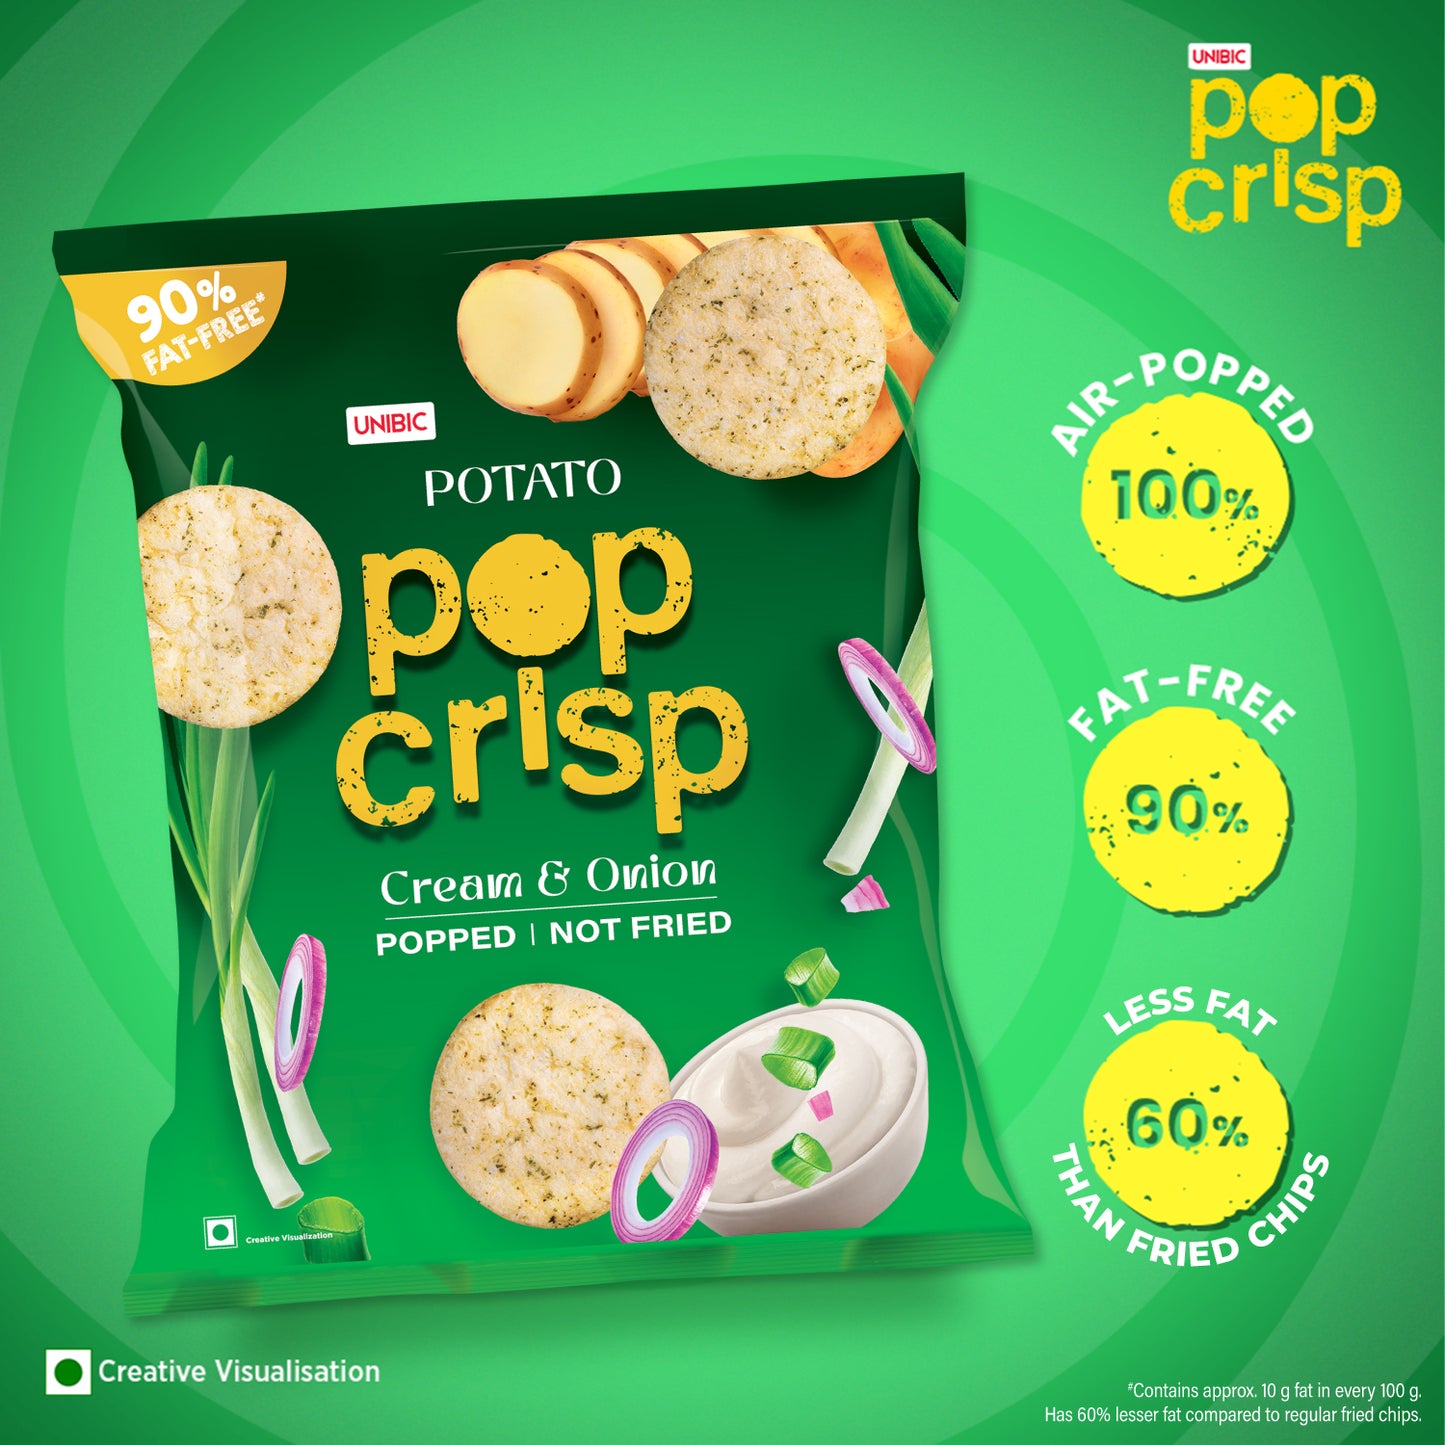 Unibic Potato Pop Crips (Cream & Onion) 80g